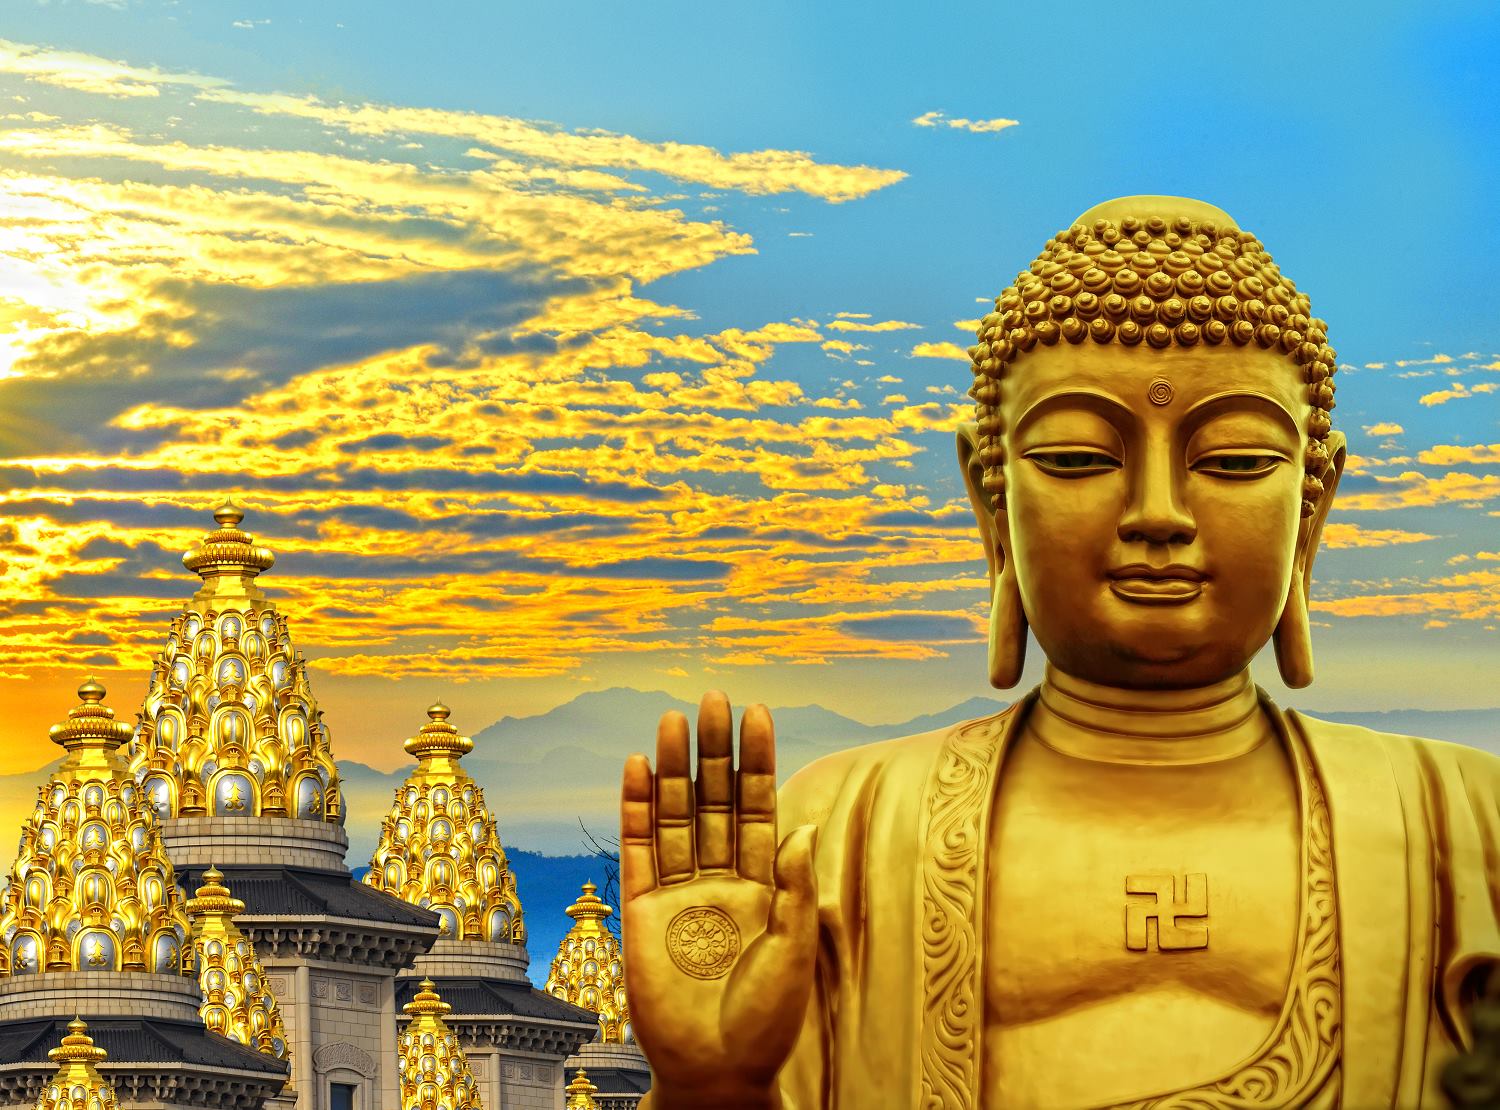 Triết lý Phật giáo: Triết lý Phật giáo mang đến sự an lạc và hiểu biết sâu sắc về cuộc sống. Hãy cùng khám phá triết lý Phật giáo và tìm thấy sự yên bình trong tâm hồn.